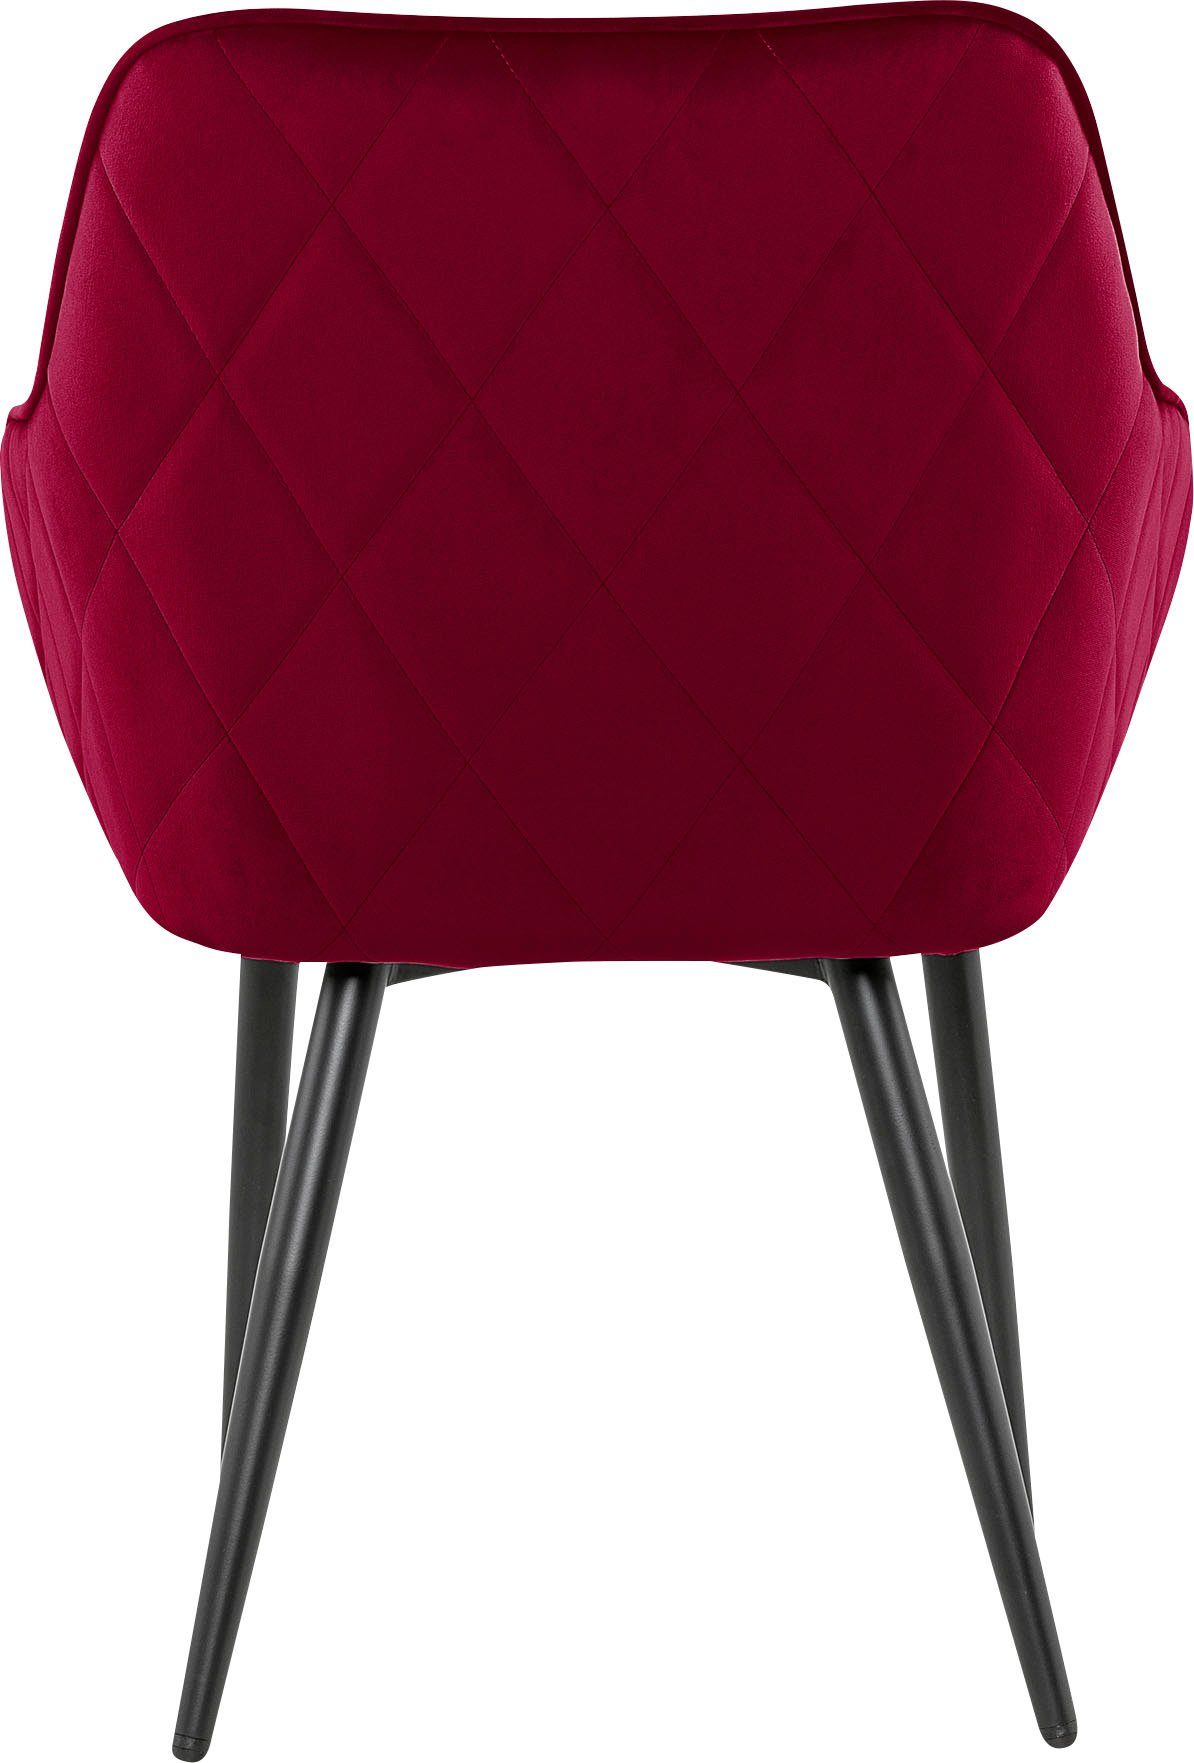 SalesFever Armlehnstuhl, mit Diamantsteppung auf Rot/Schwarz der Rückseite